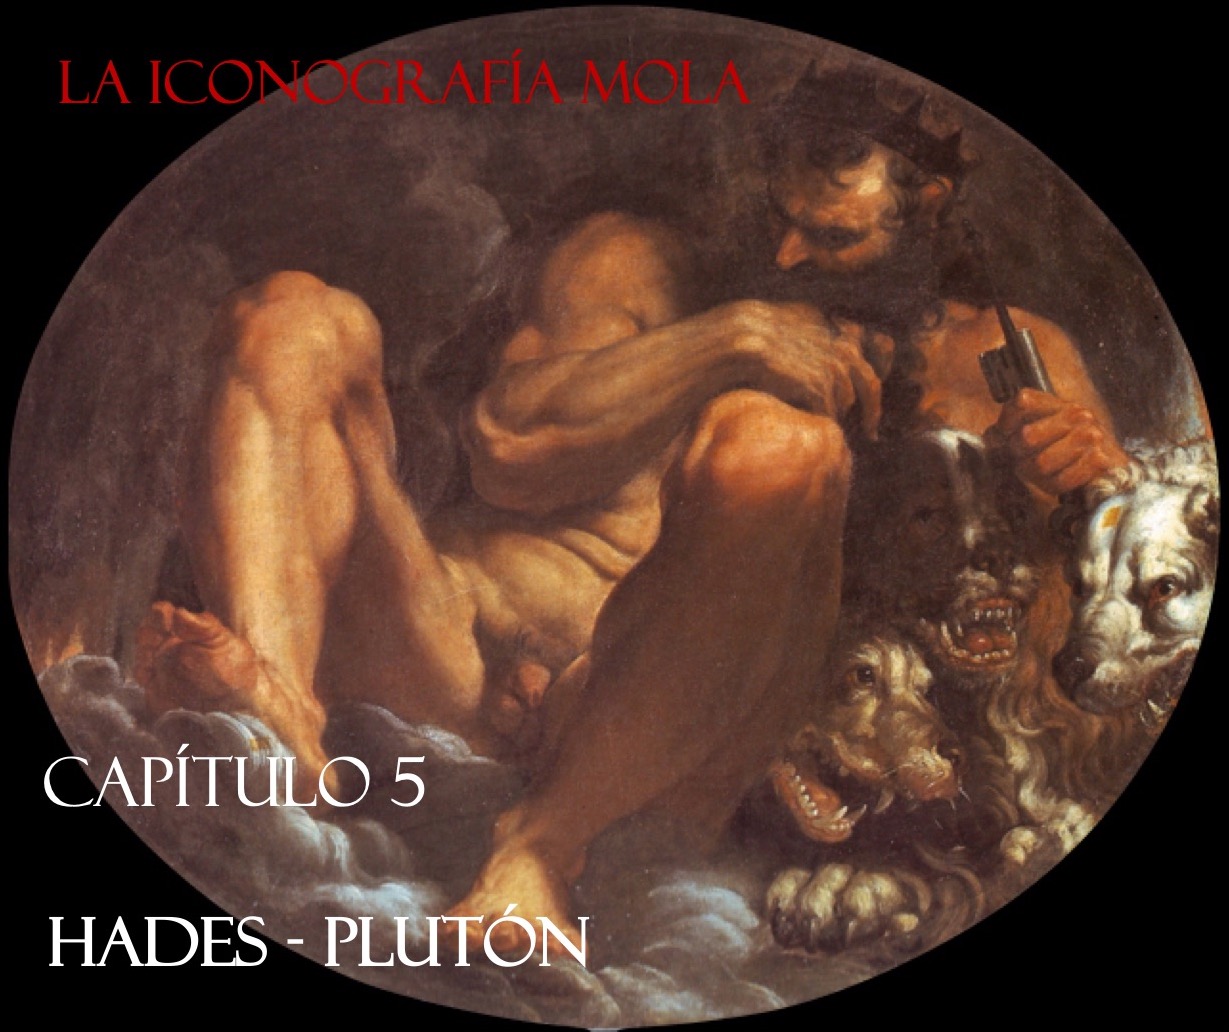 La Iconografía Mola- Cap. 5: “Hades – Plutón”